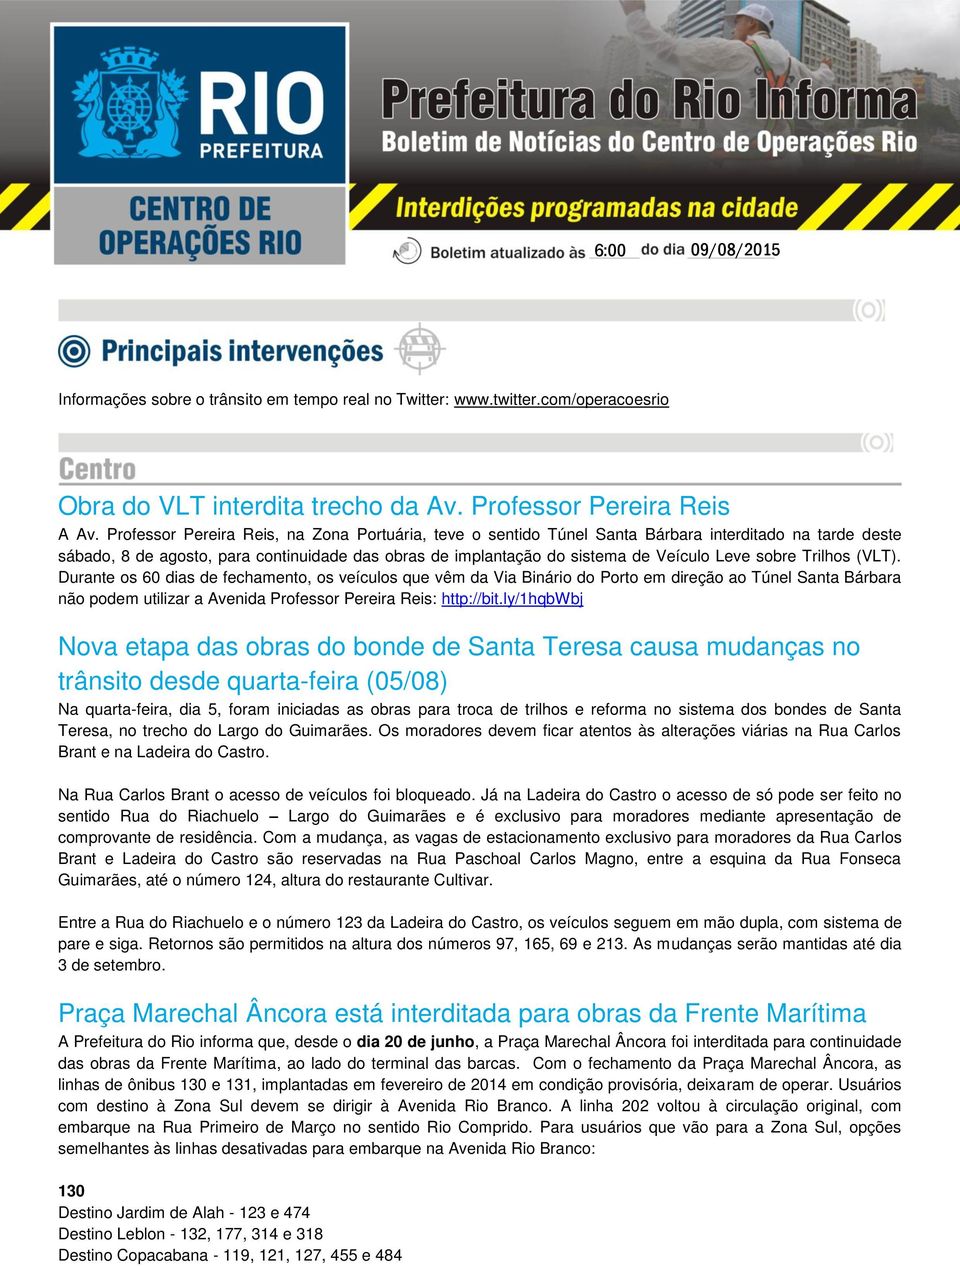 sobre Trilhos (VLT). Durante os 60 dias de fechamento, os veículos que vêm da Via Binário do Porto em direção ao Túnel Santa Bárbara não podem utilizar a Avenida Professor Pereira Reis: http://bit.